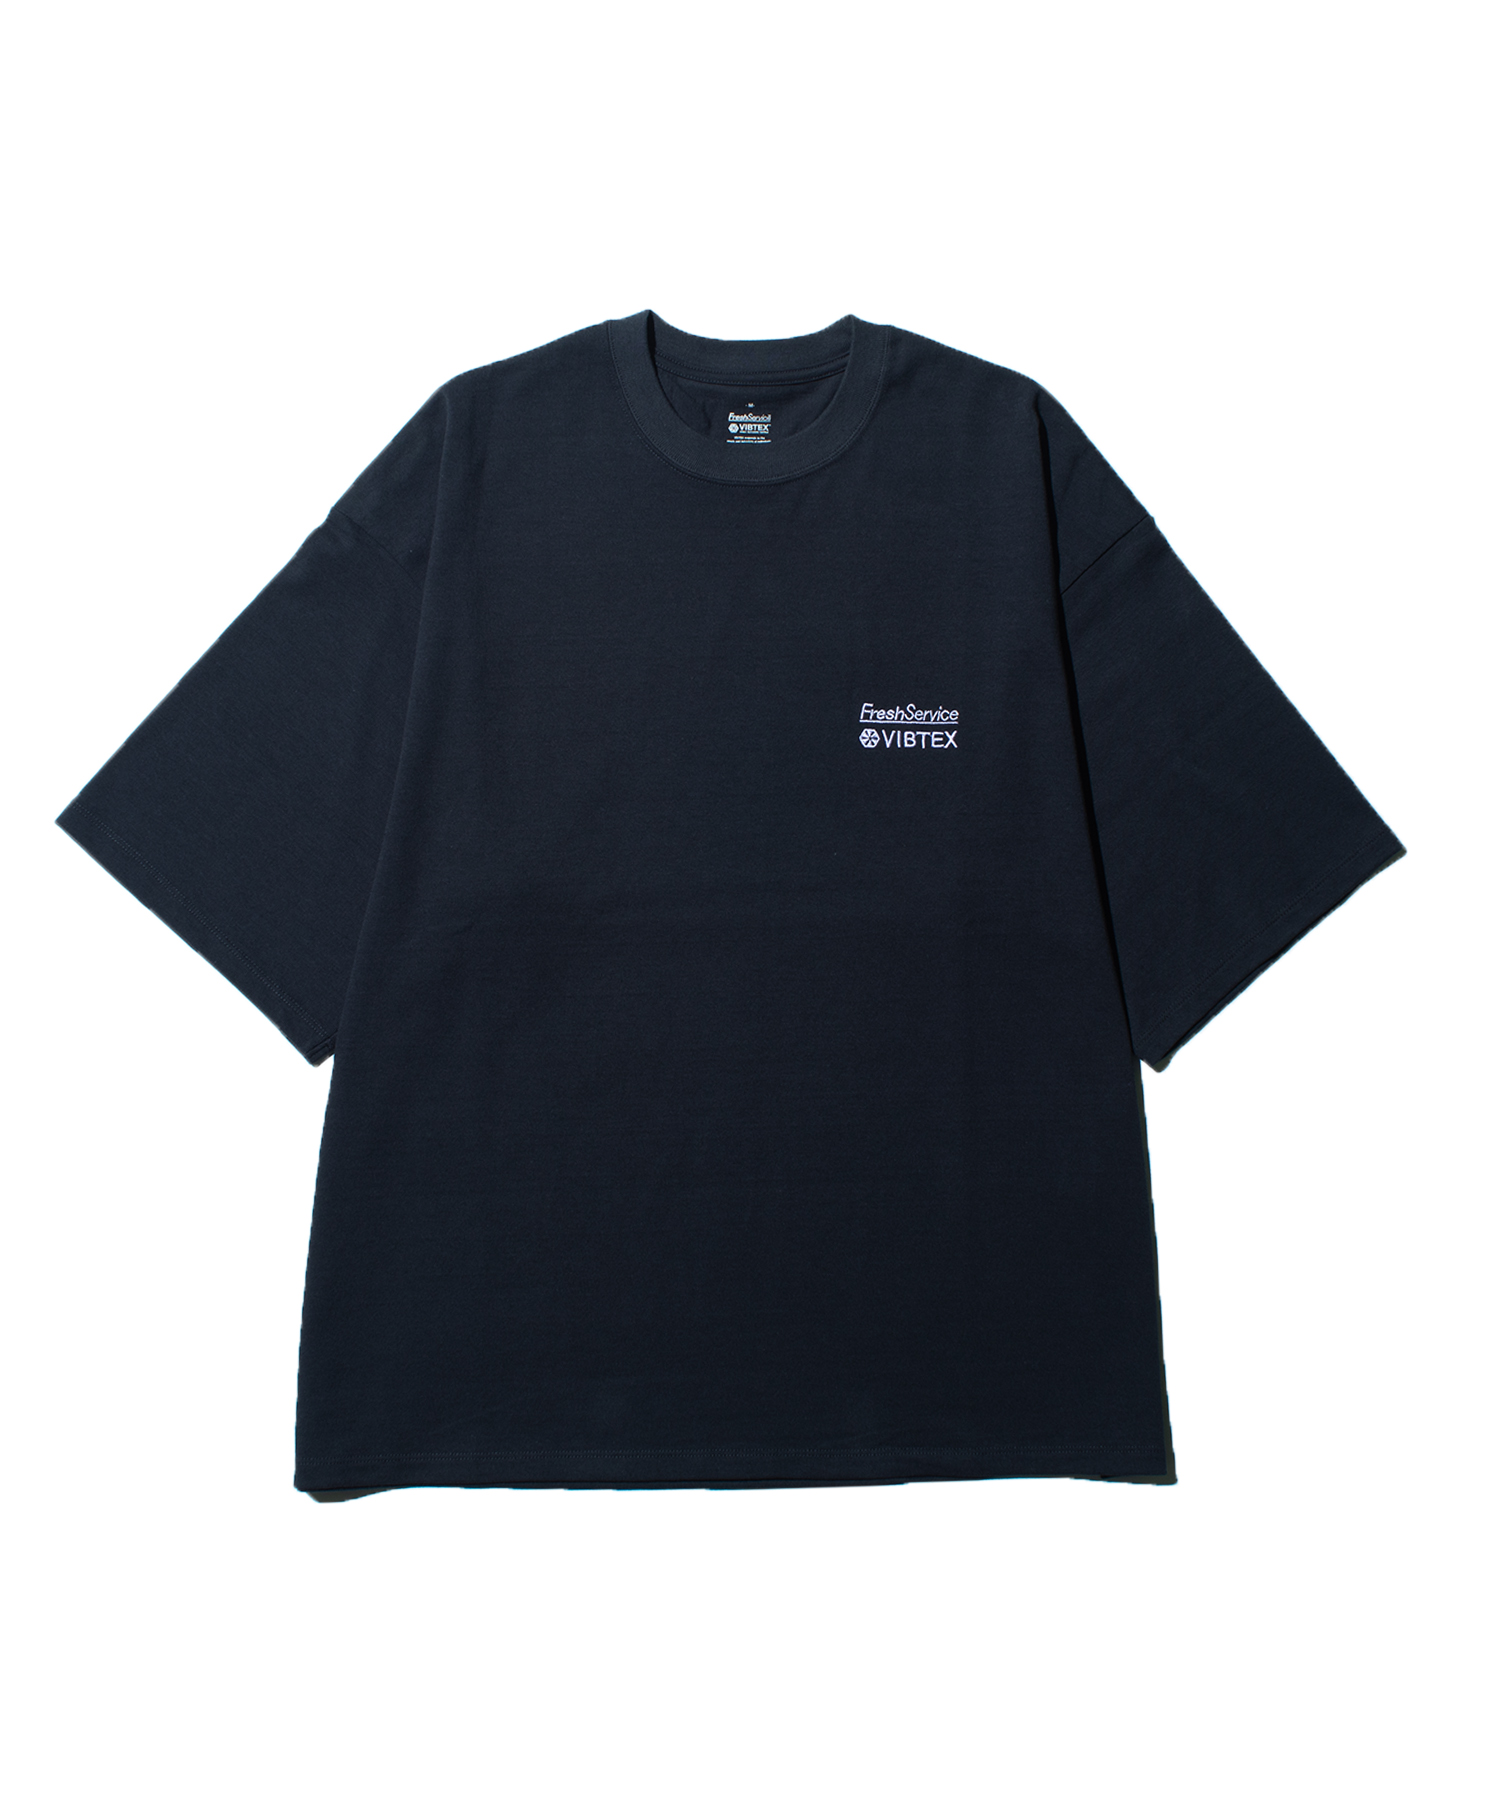 フレッシュサービス ビブテックス Tシャツ - Tシャツ/カットソー(半袖 